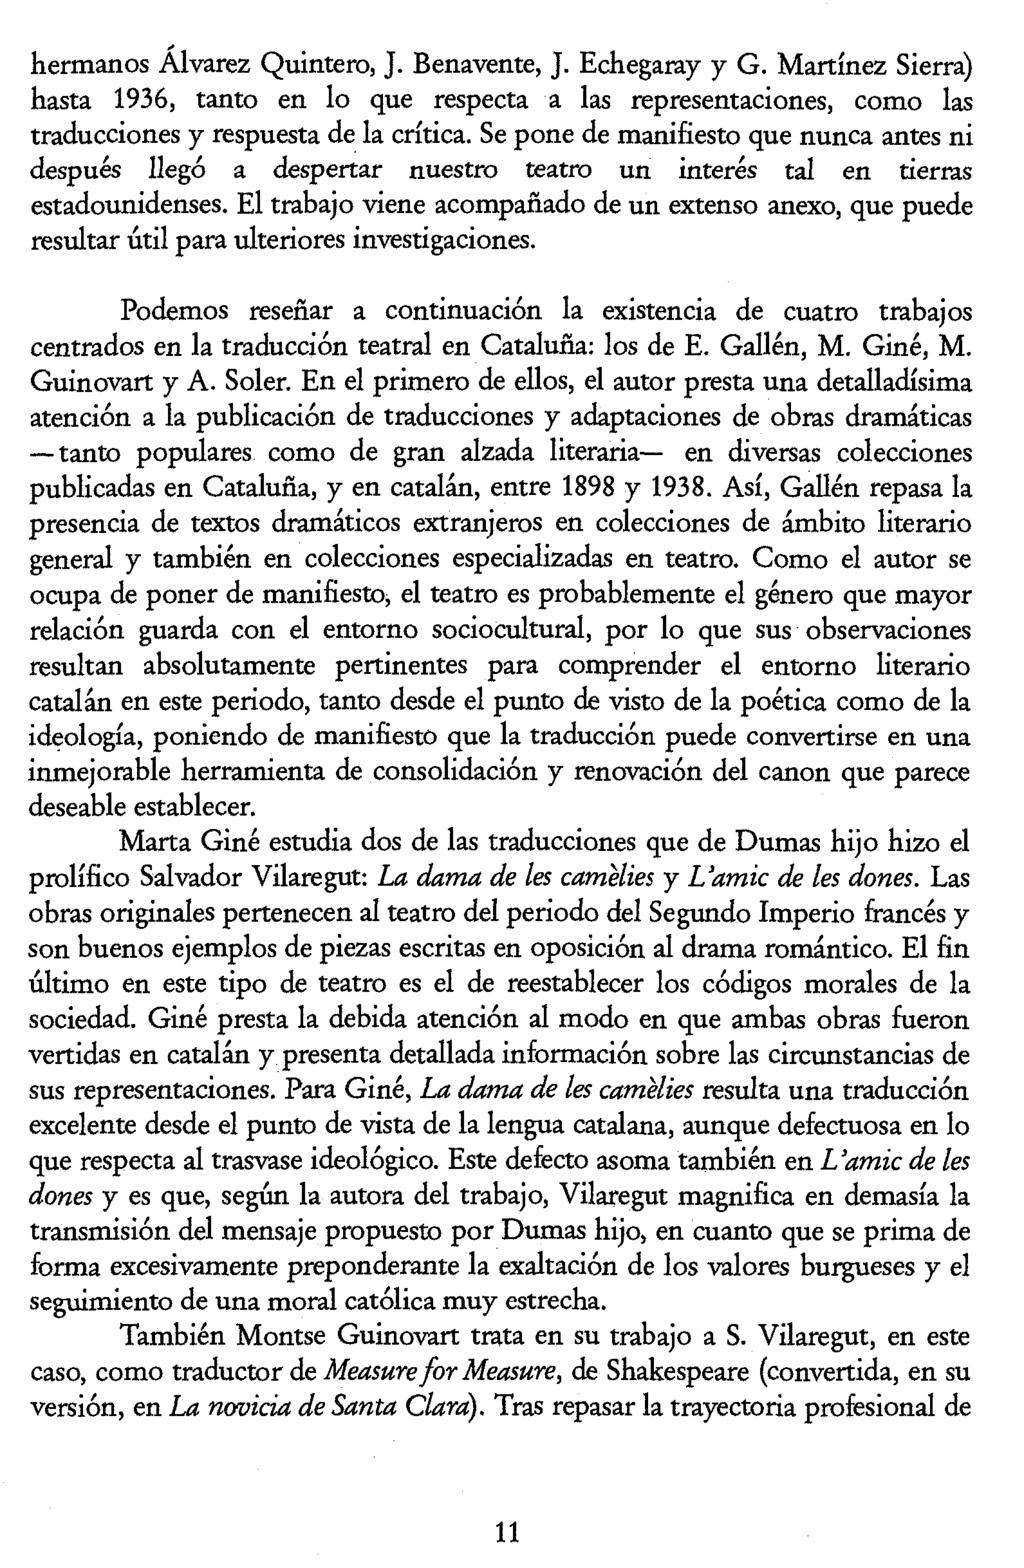 Luis Pegenaute (Ed.) La traducción en la Edad de Plata